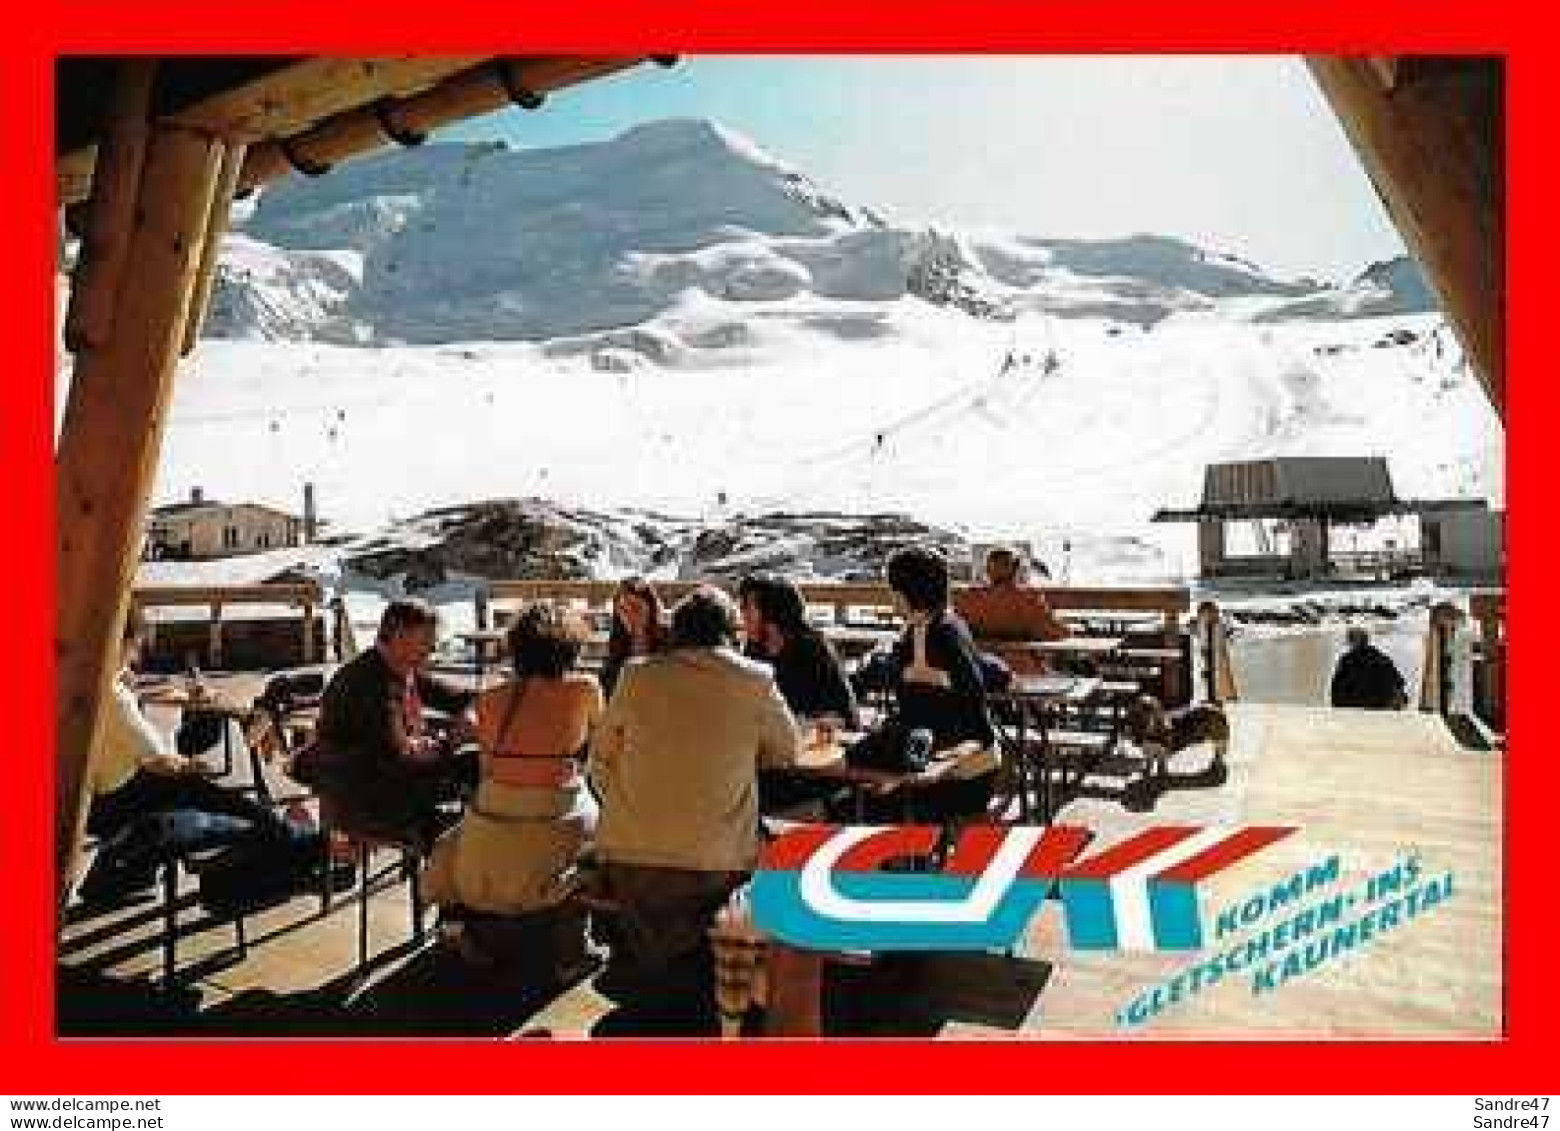 CPSM/gf  KAUNERTAL (Autriche).  Sommer Schilauf, 3160 M, Gletscher-restaurant 2750 M. ..*419 - Kaunertal